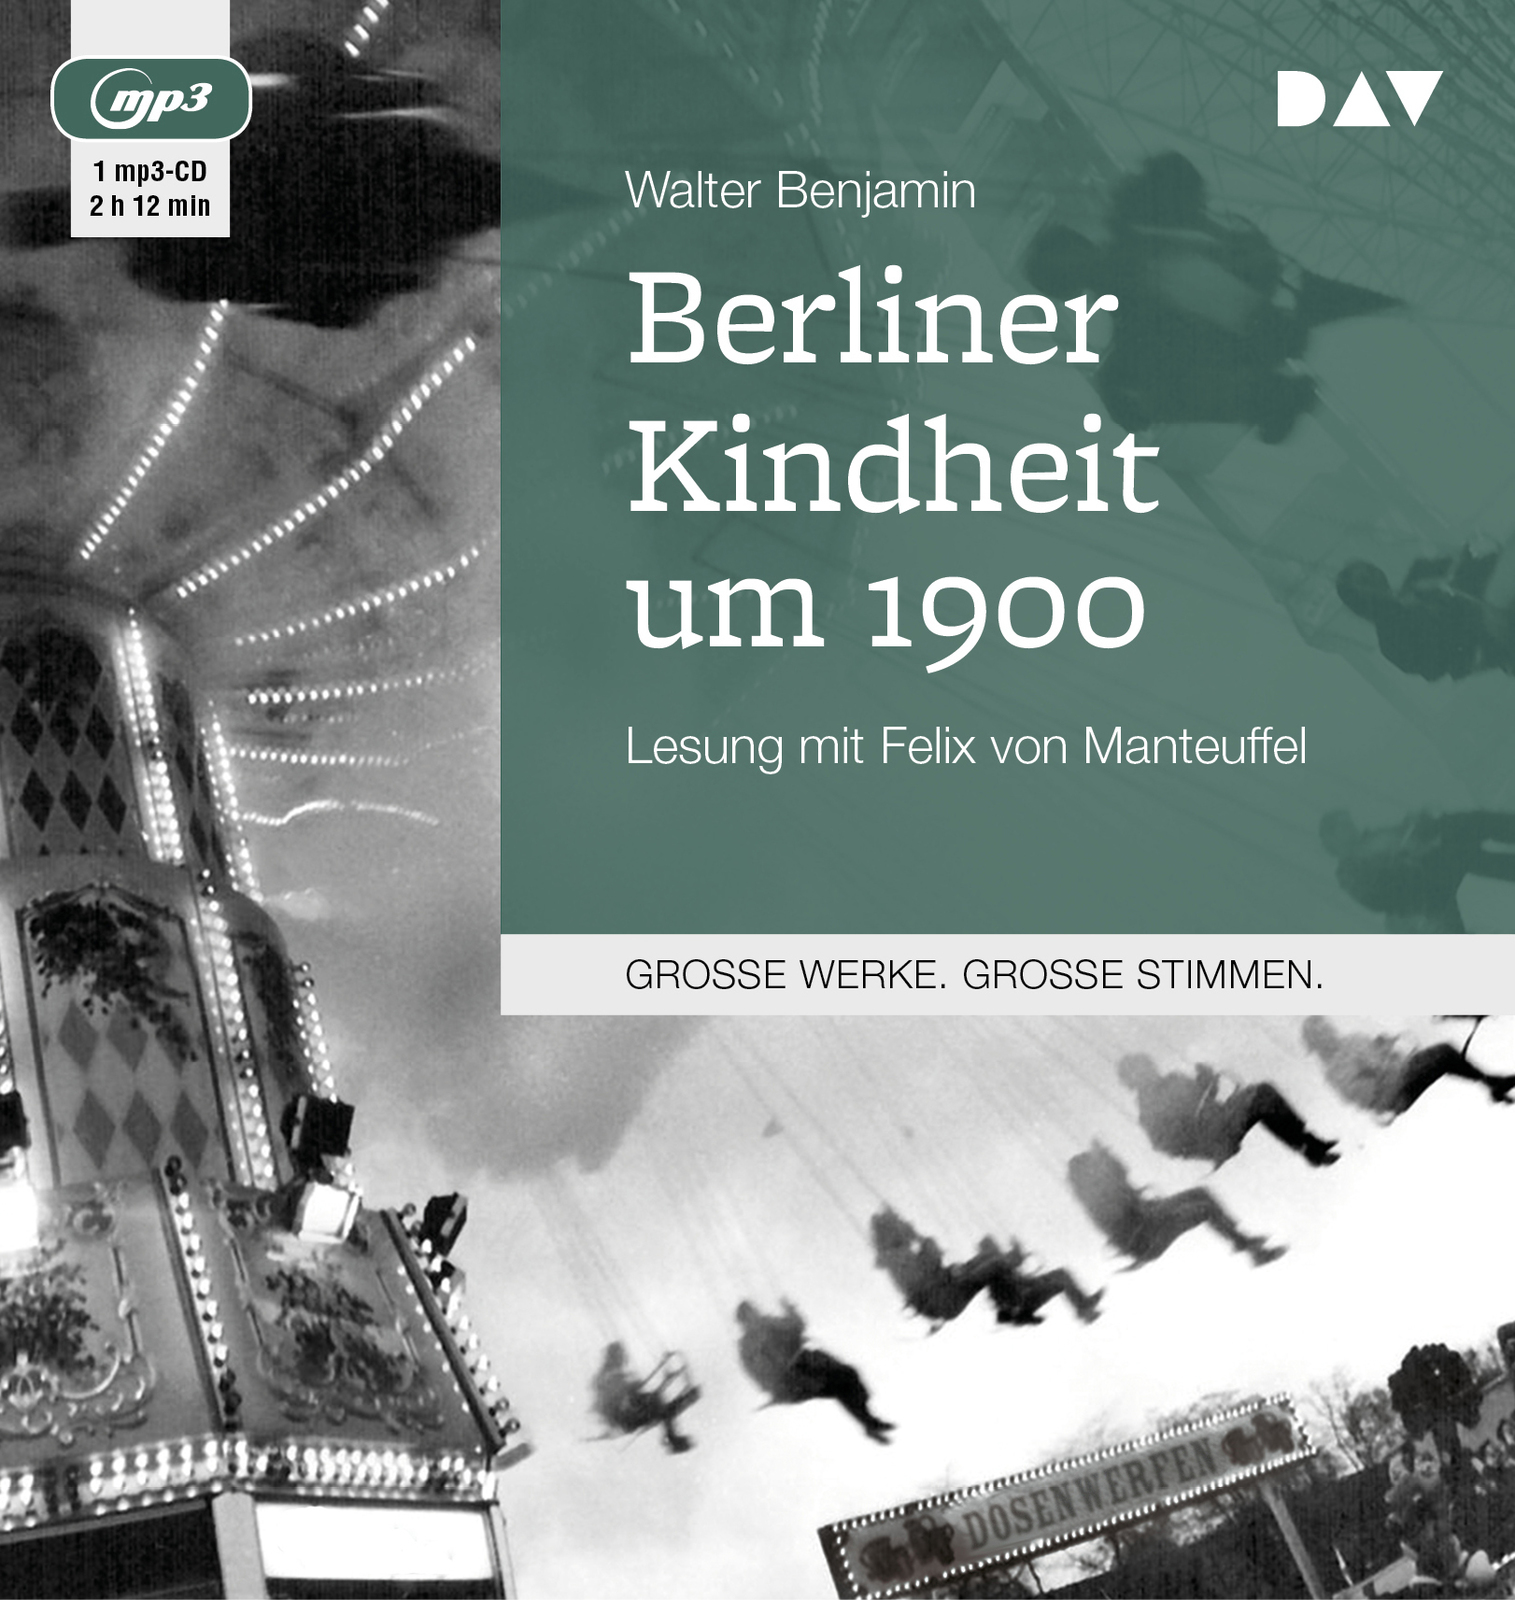 Hoffmeister, Berliner Kindheit, Walter Benjamin, Benjamin, Felix von Manteuffel, Manteuffel, 1900